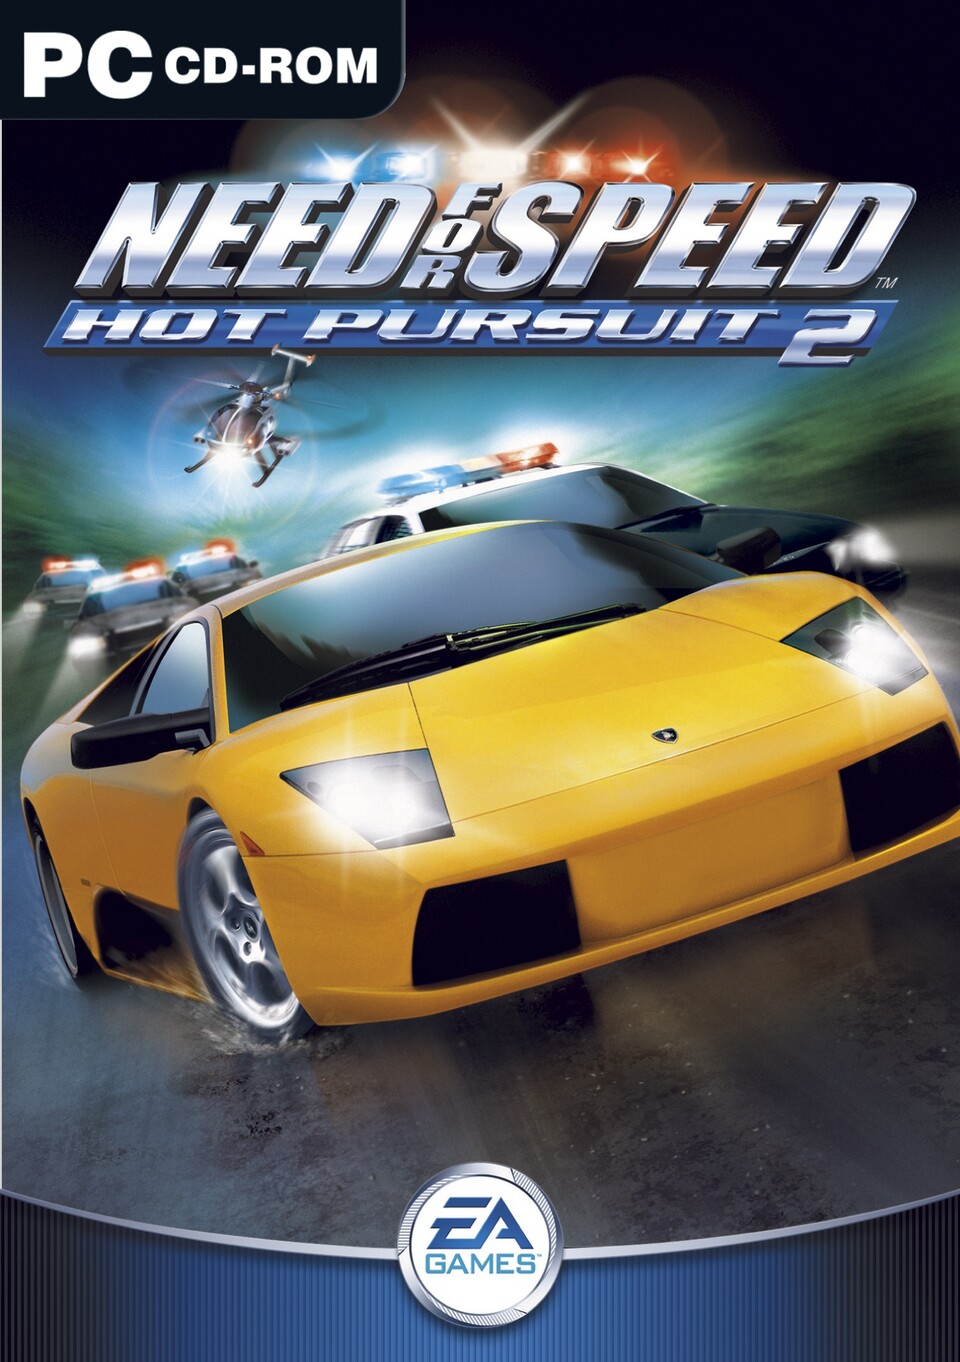 Hot Pursuit 2 erschien 2002 und bekam mit 86 Punkten die bis dahin höchste GameStar-Wertung für einen Need for Speed-Teil.